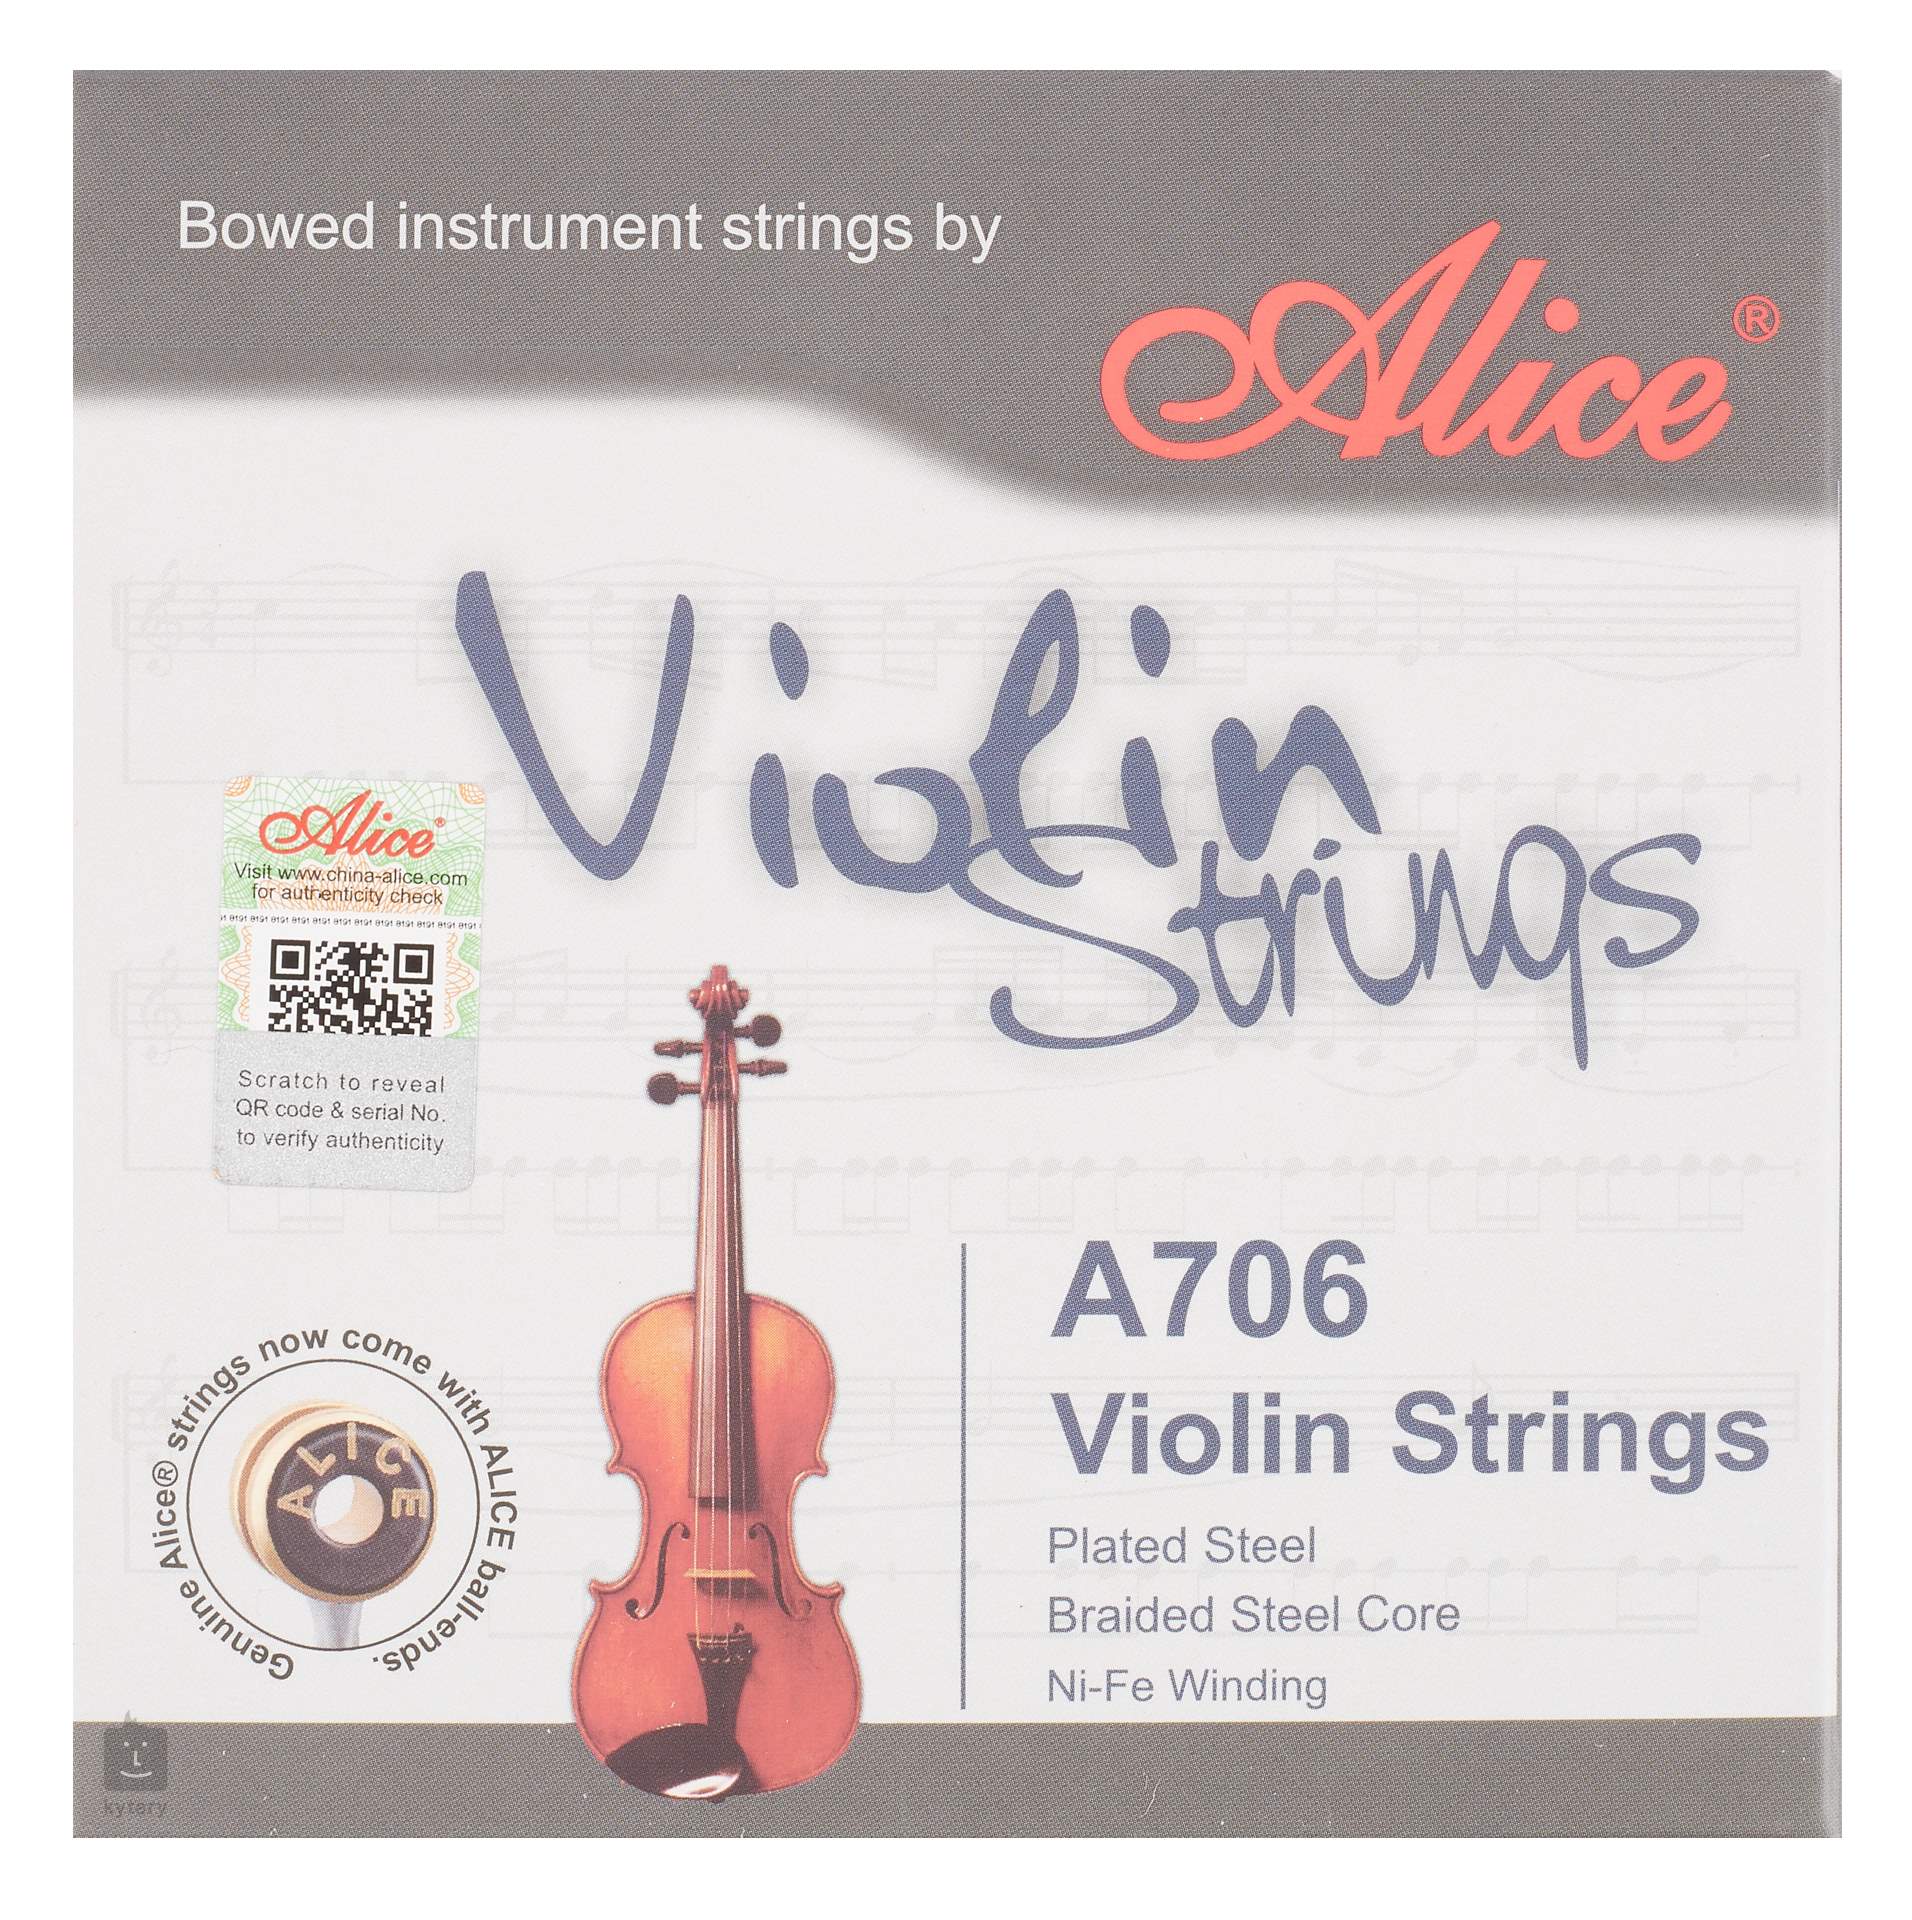 Cordes pour violon - Cordes de violon - Set de cordes de violon